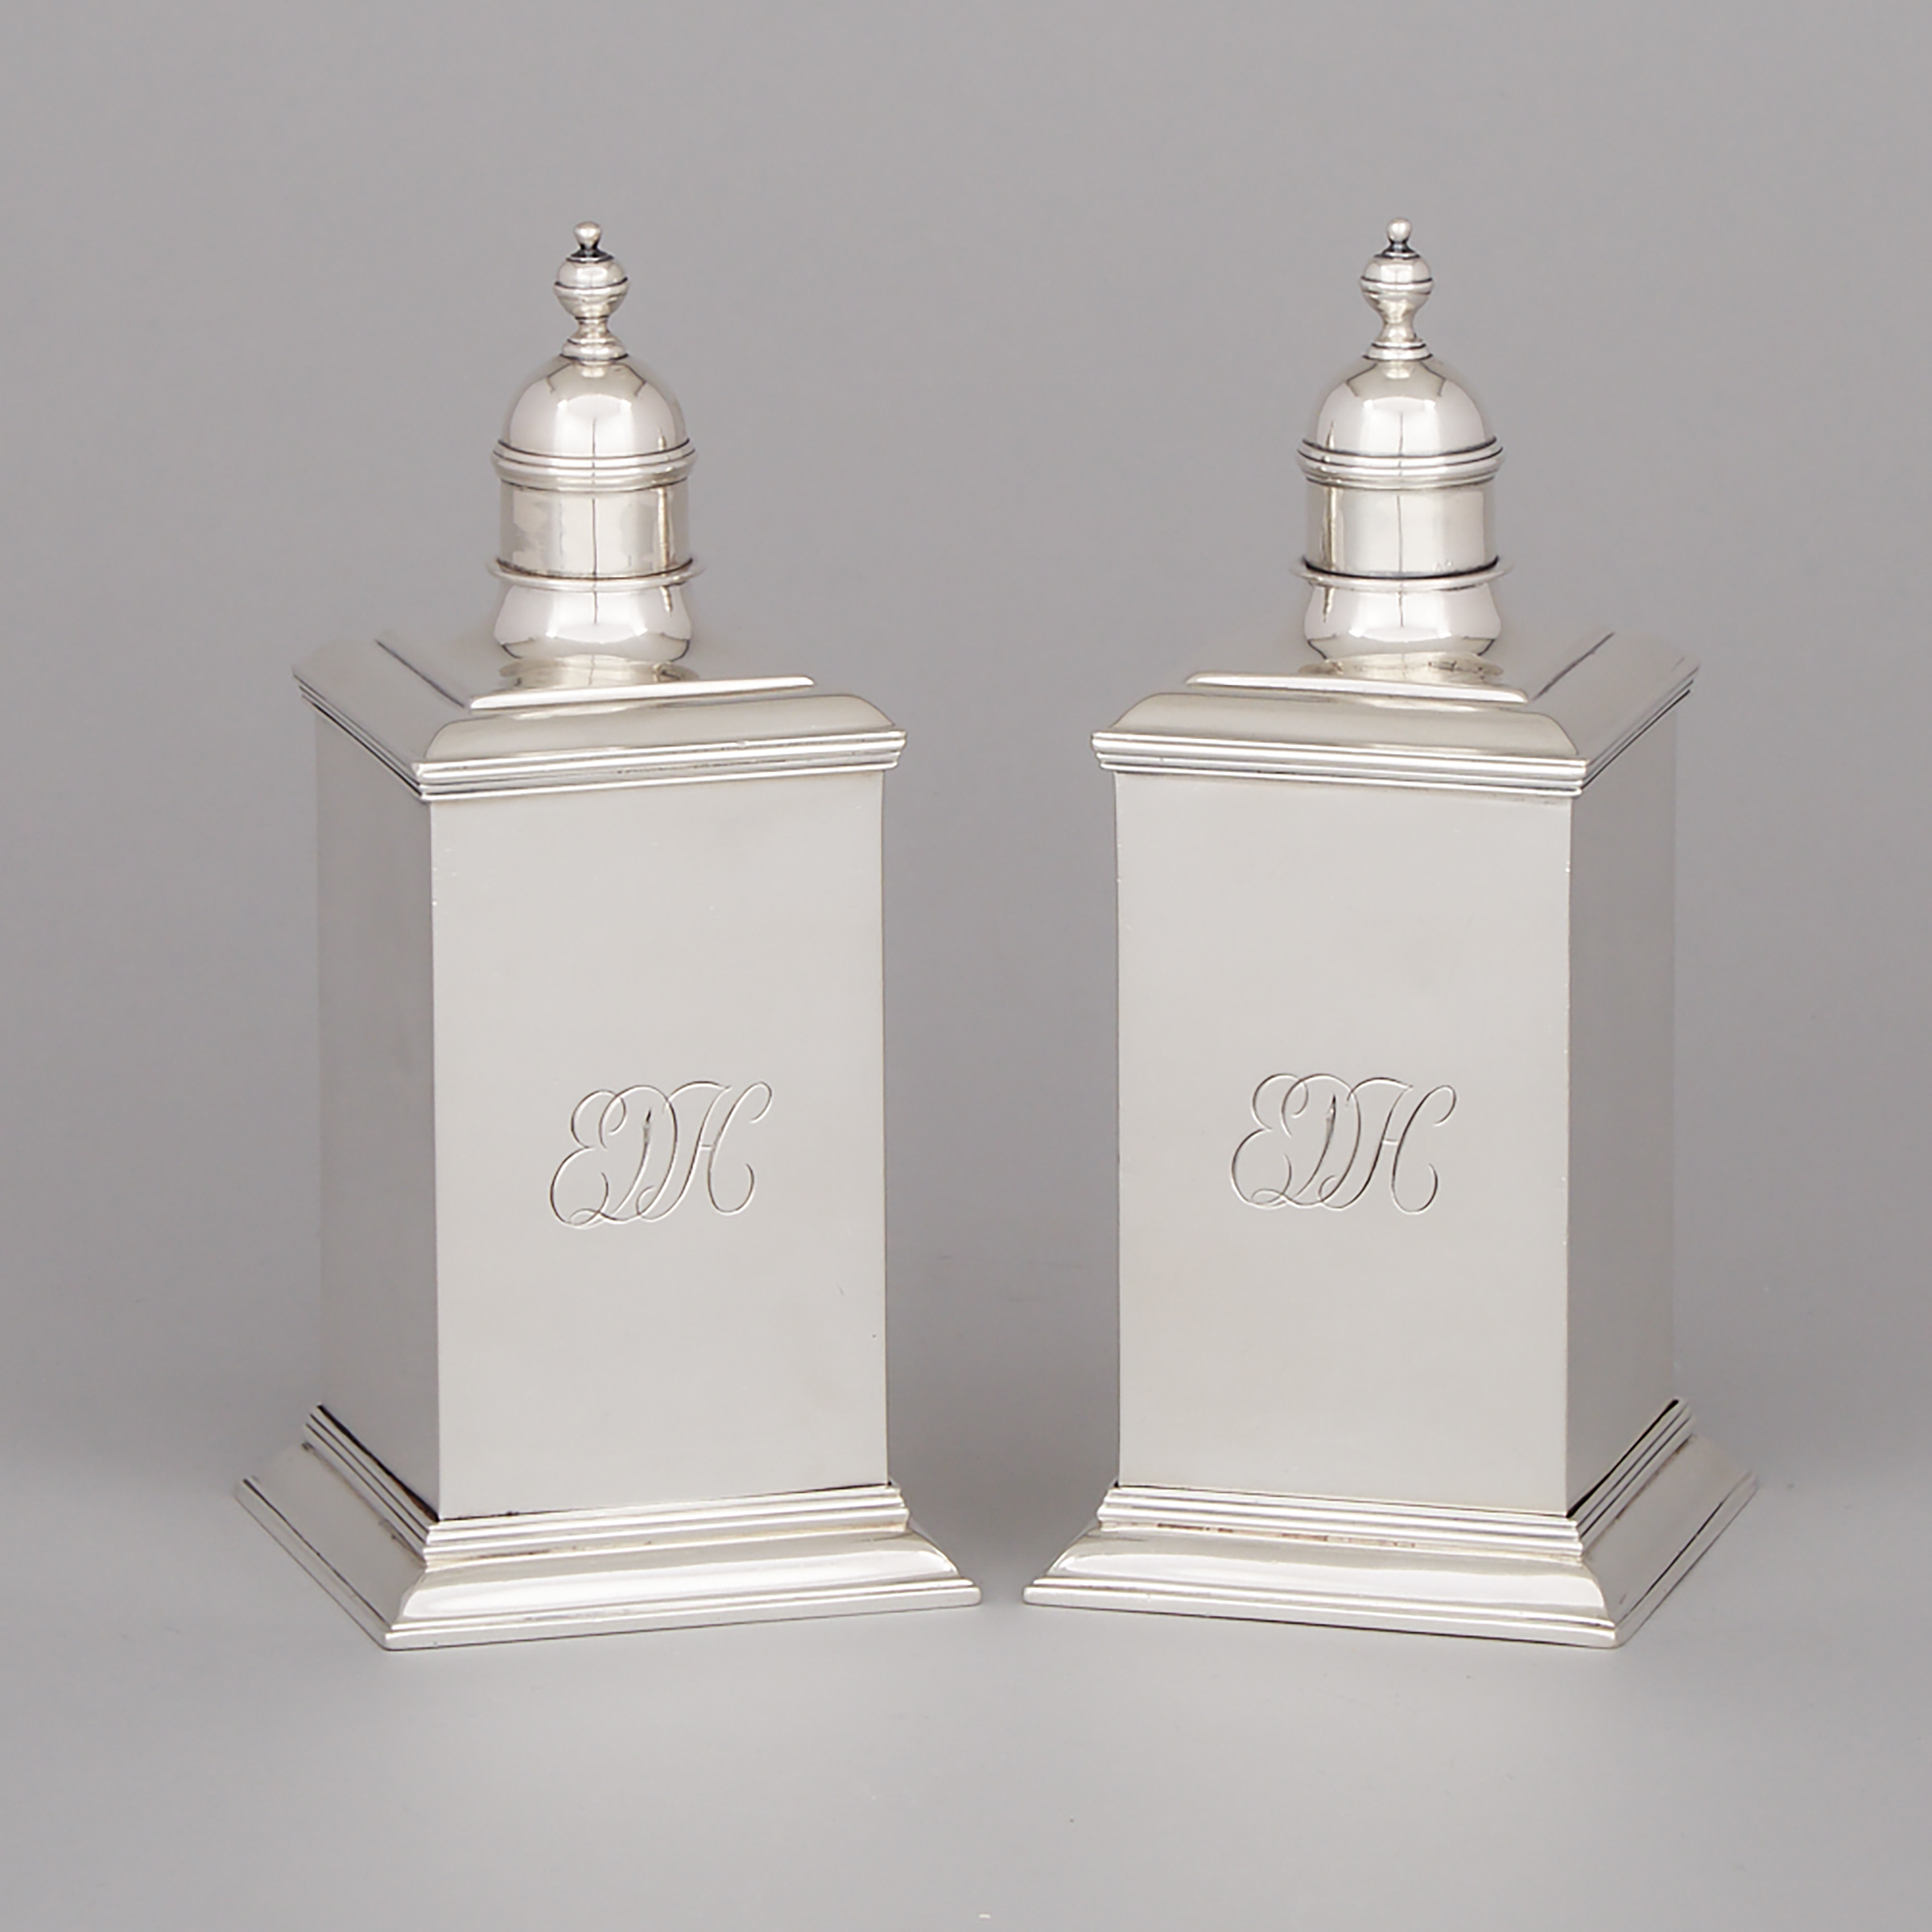 Pair of English Silver Cased Spirit or Toilet Water Bottles, Crichton Bros., London, 1915